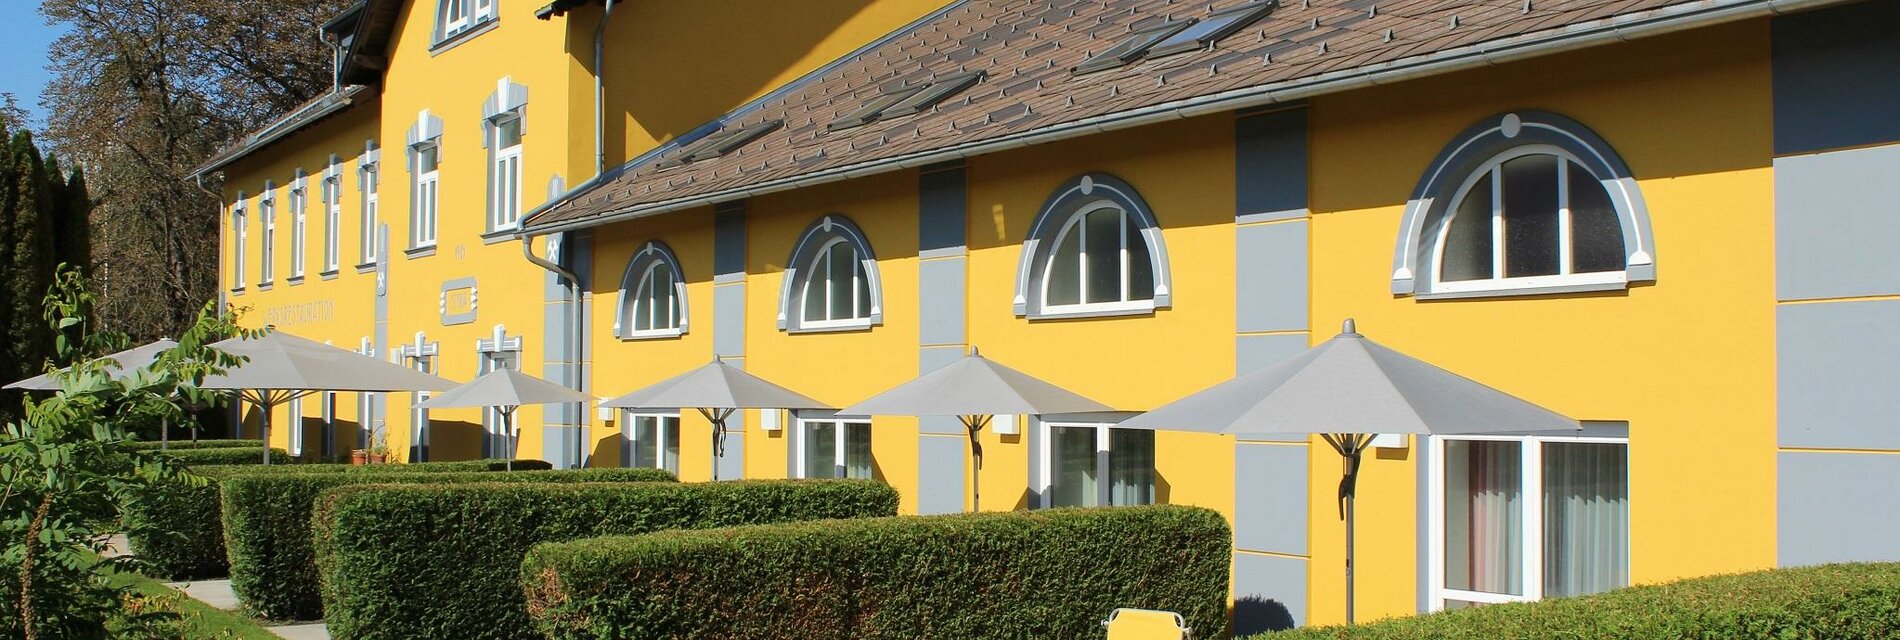 GästehausKarlAugust-Außenansicht-Murtal-Steiermark